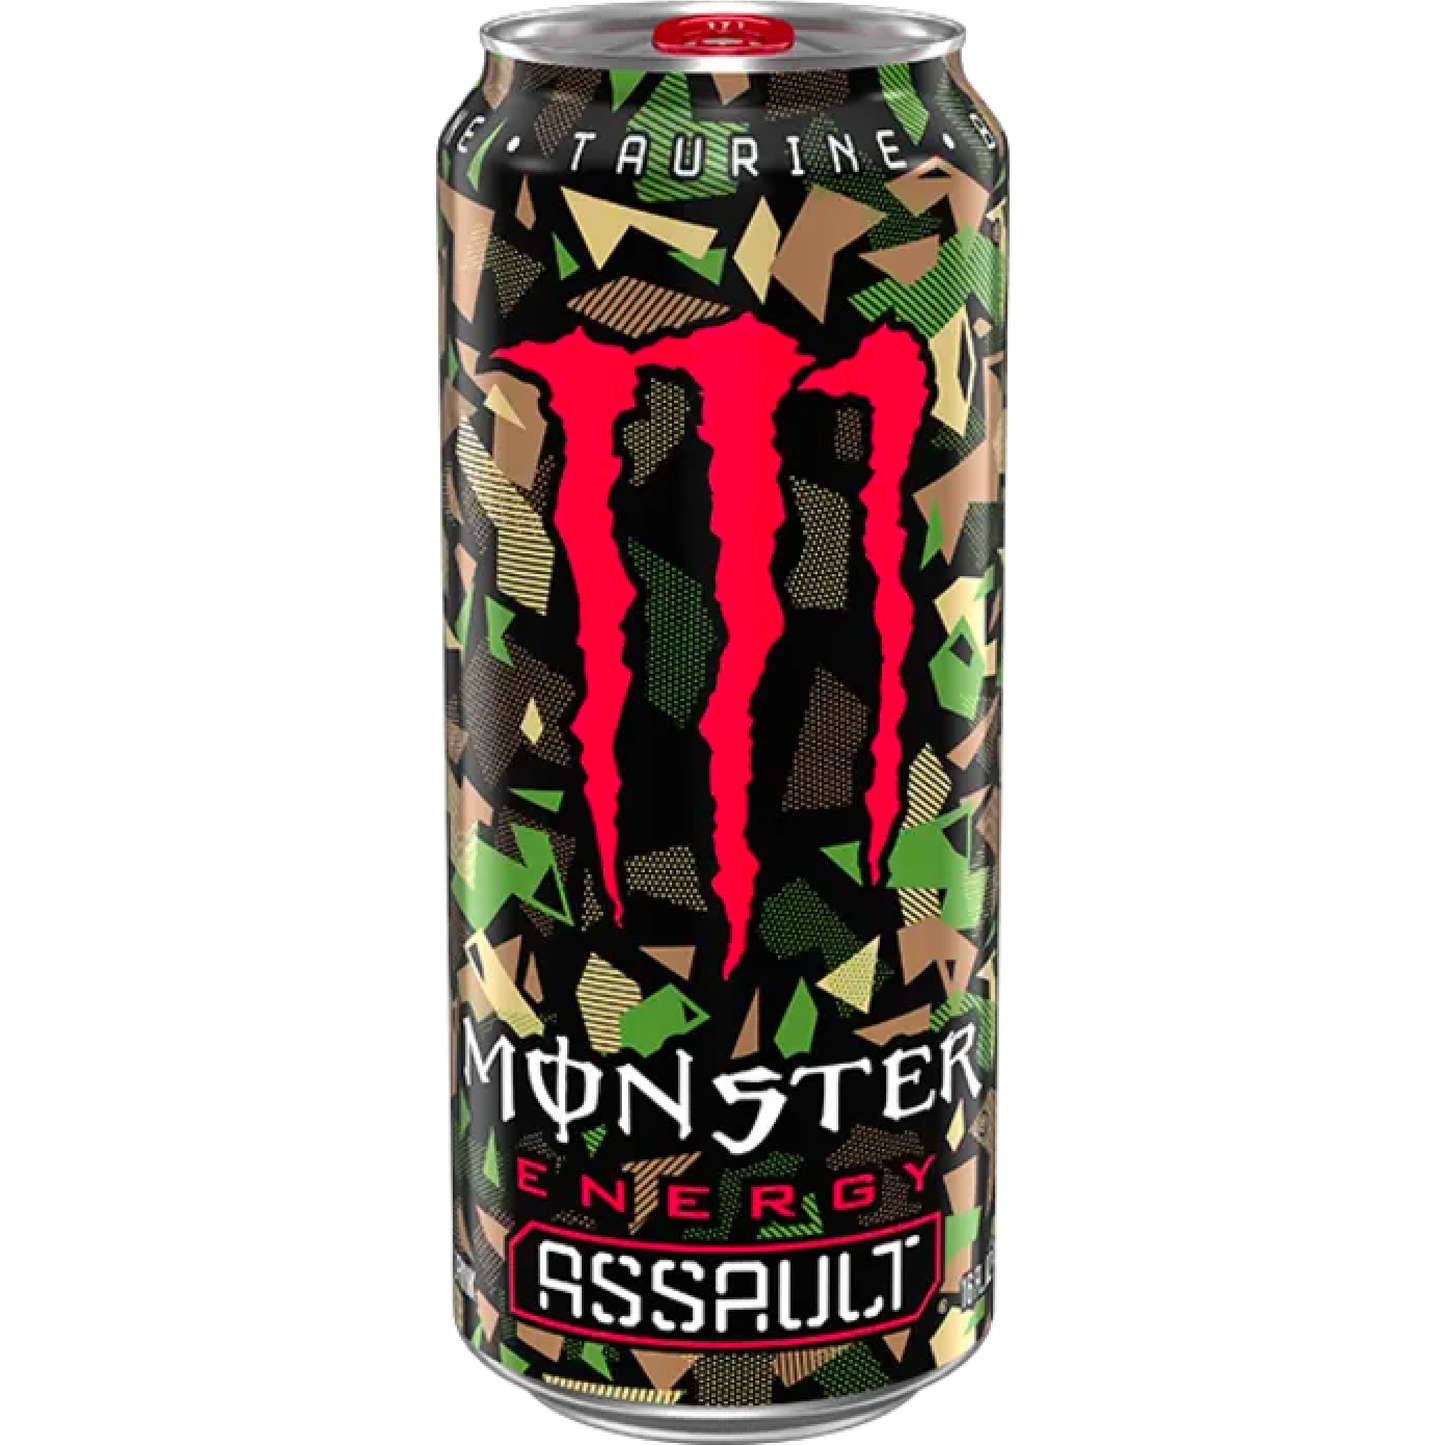 Monster Assault 50cl